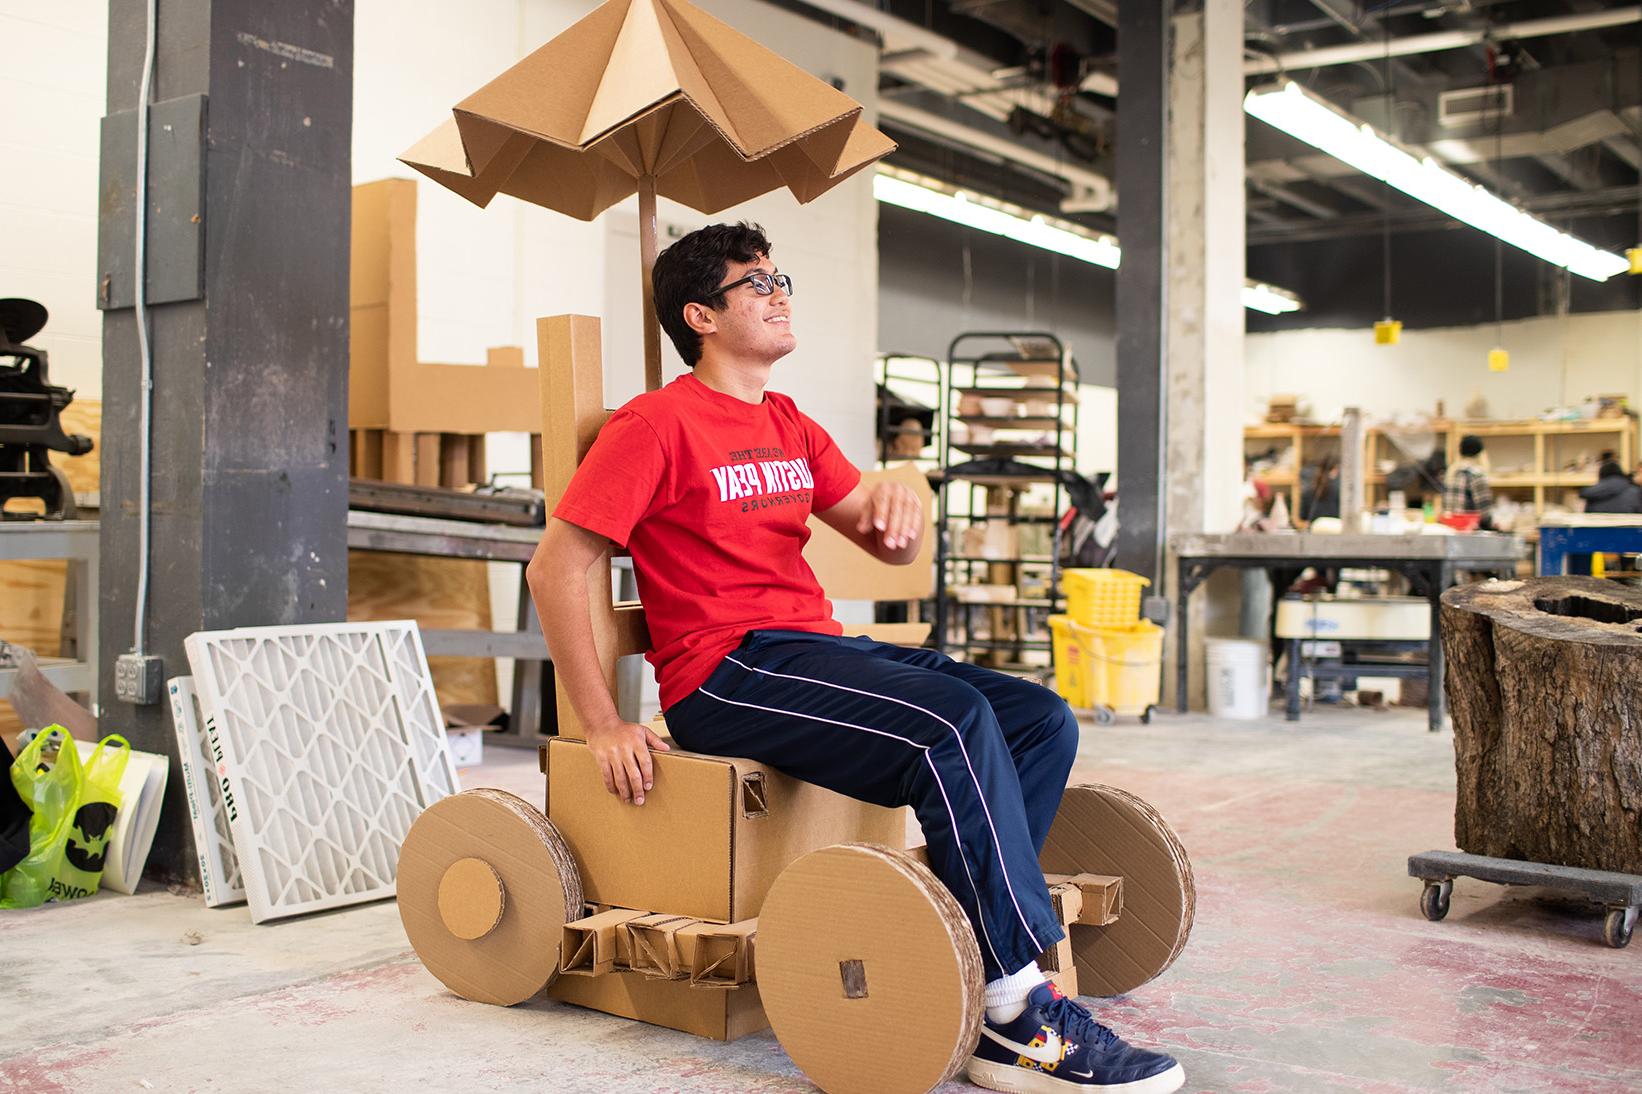 Jeremy Vega poses in cardboard bicycle